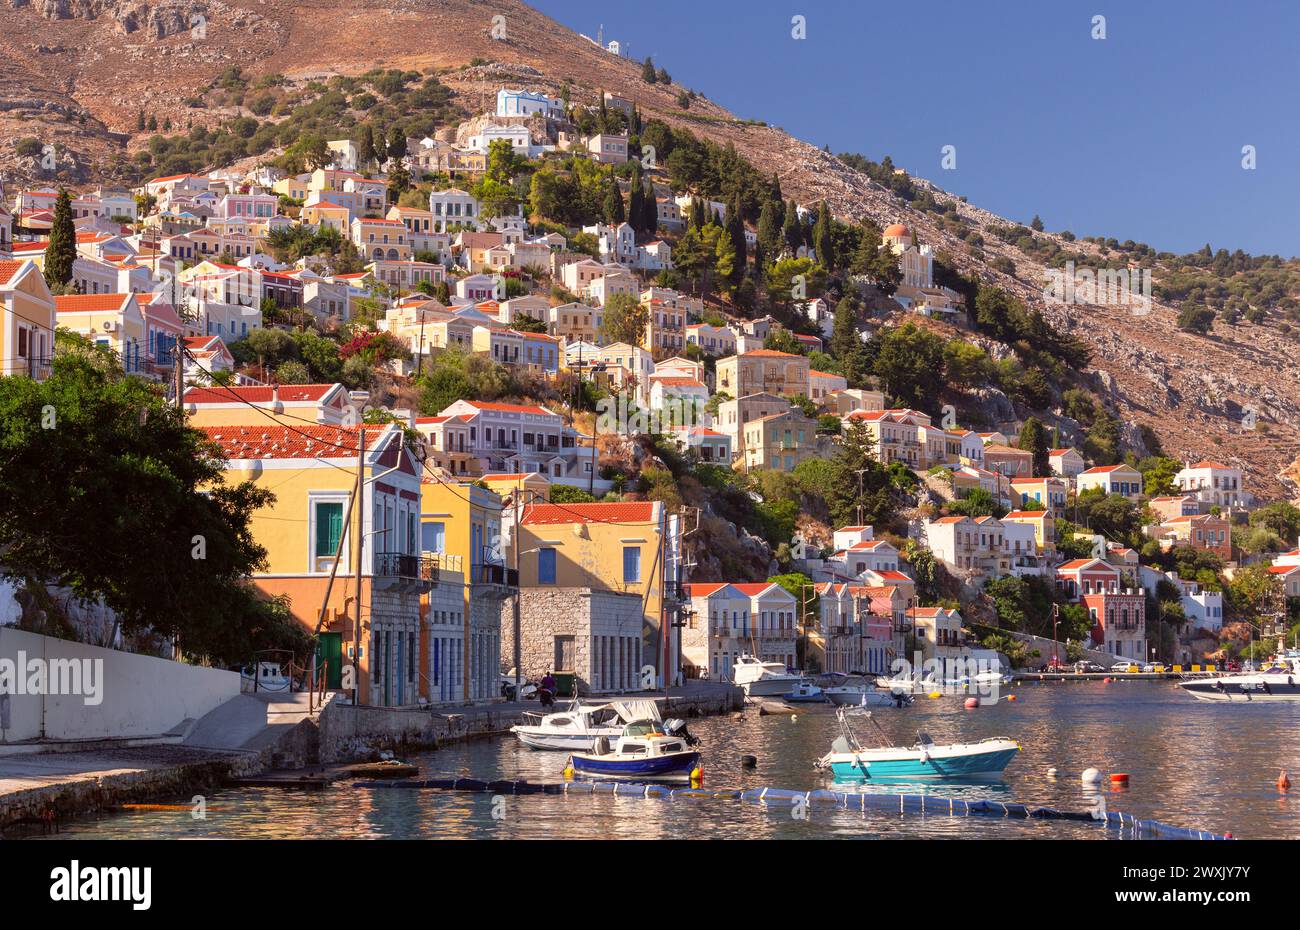 Vista delle case tradizionali colorate e delle barche da pesca nel villaggio di pescatori Symi in una giornata di sole. Grecia. Dodecaneso. Foto Stock